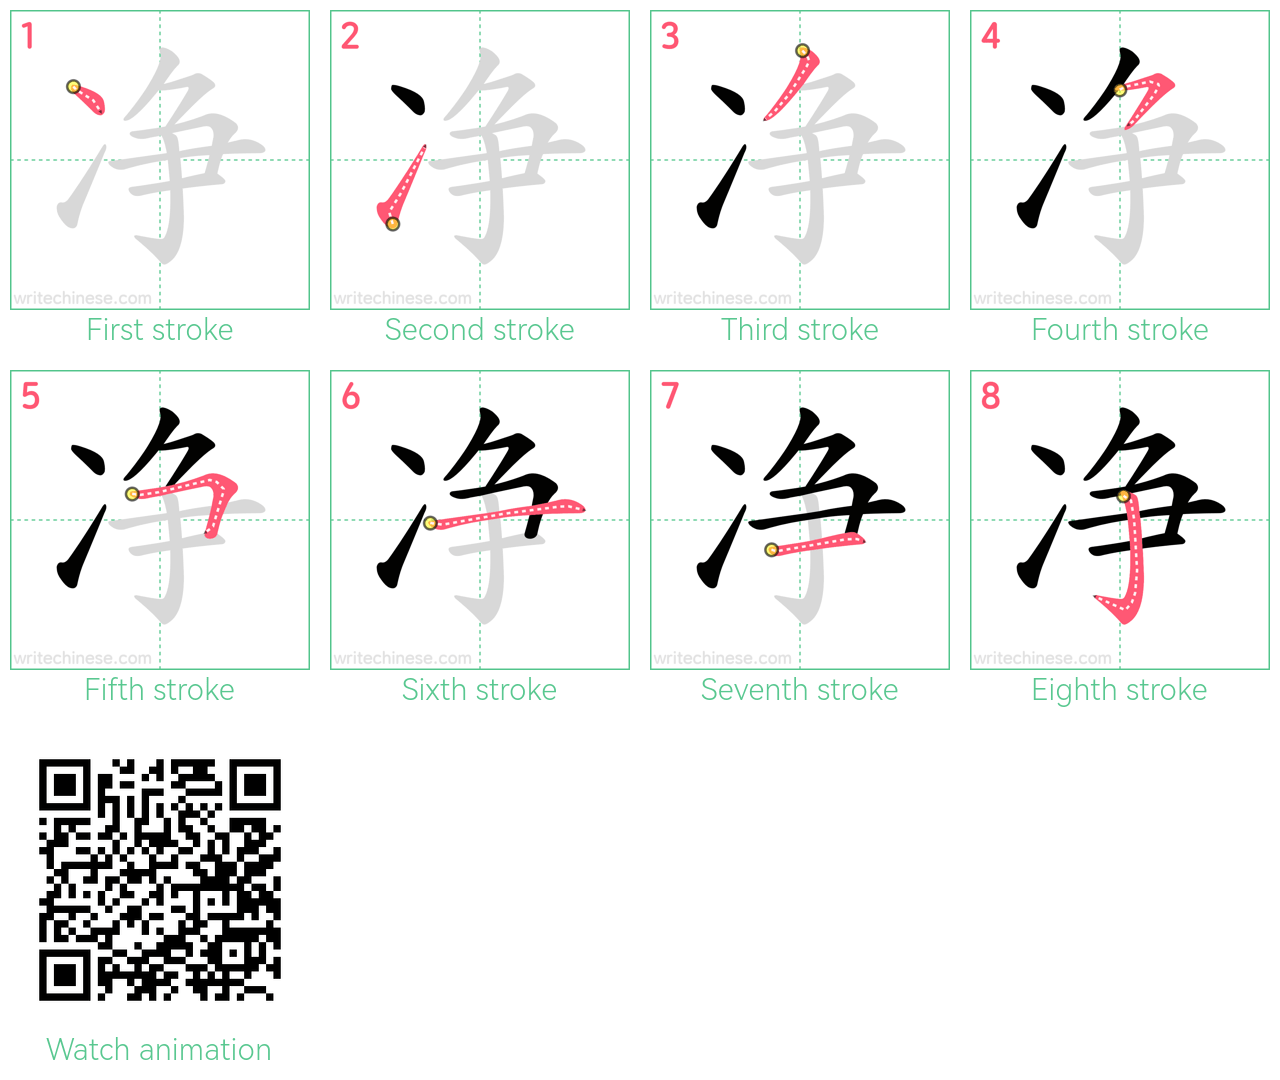 净 step-by-step stroke order diagrams